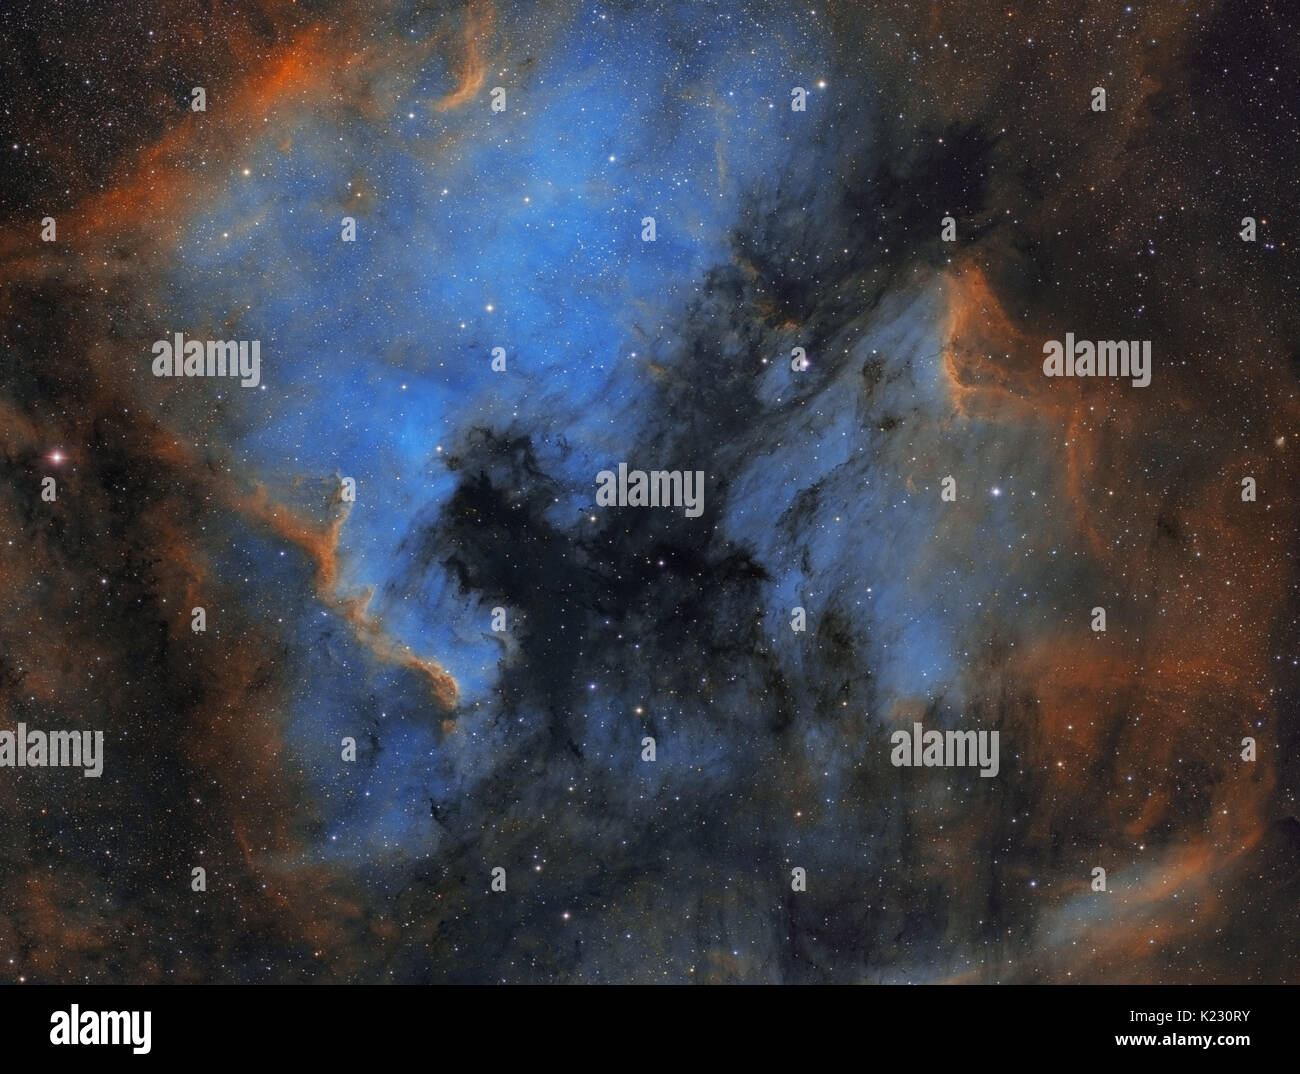 Nordamerika und Pelican Nebel im Sternbild Cygnus (Schwan) - hubble Palette Stockfoto